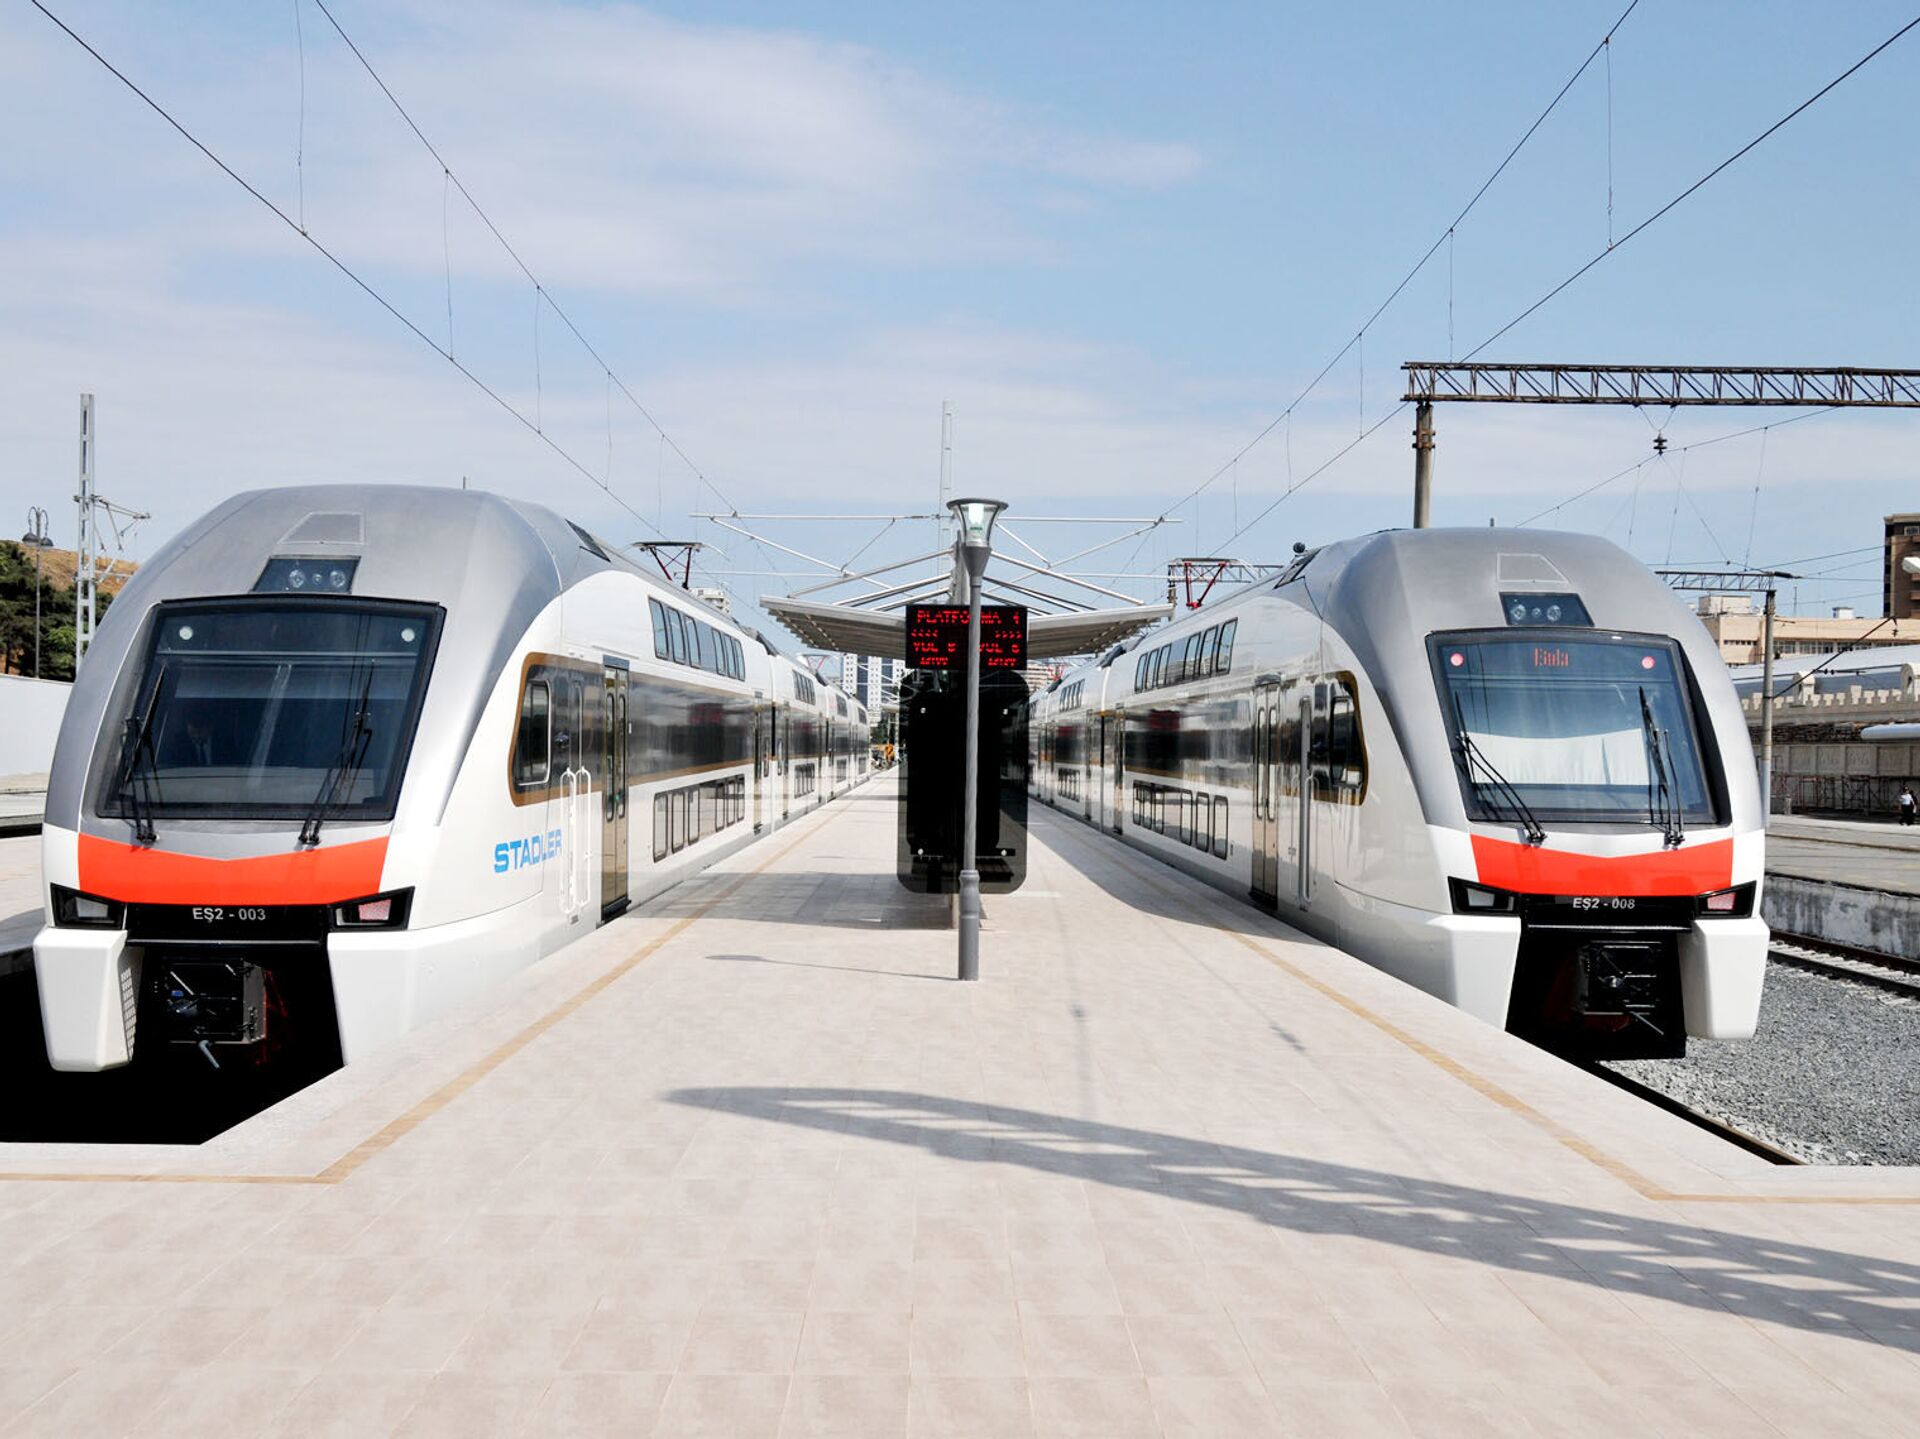 Обнародован график движения поезда Баку - Сумгайыт на ближайшие три дня